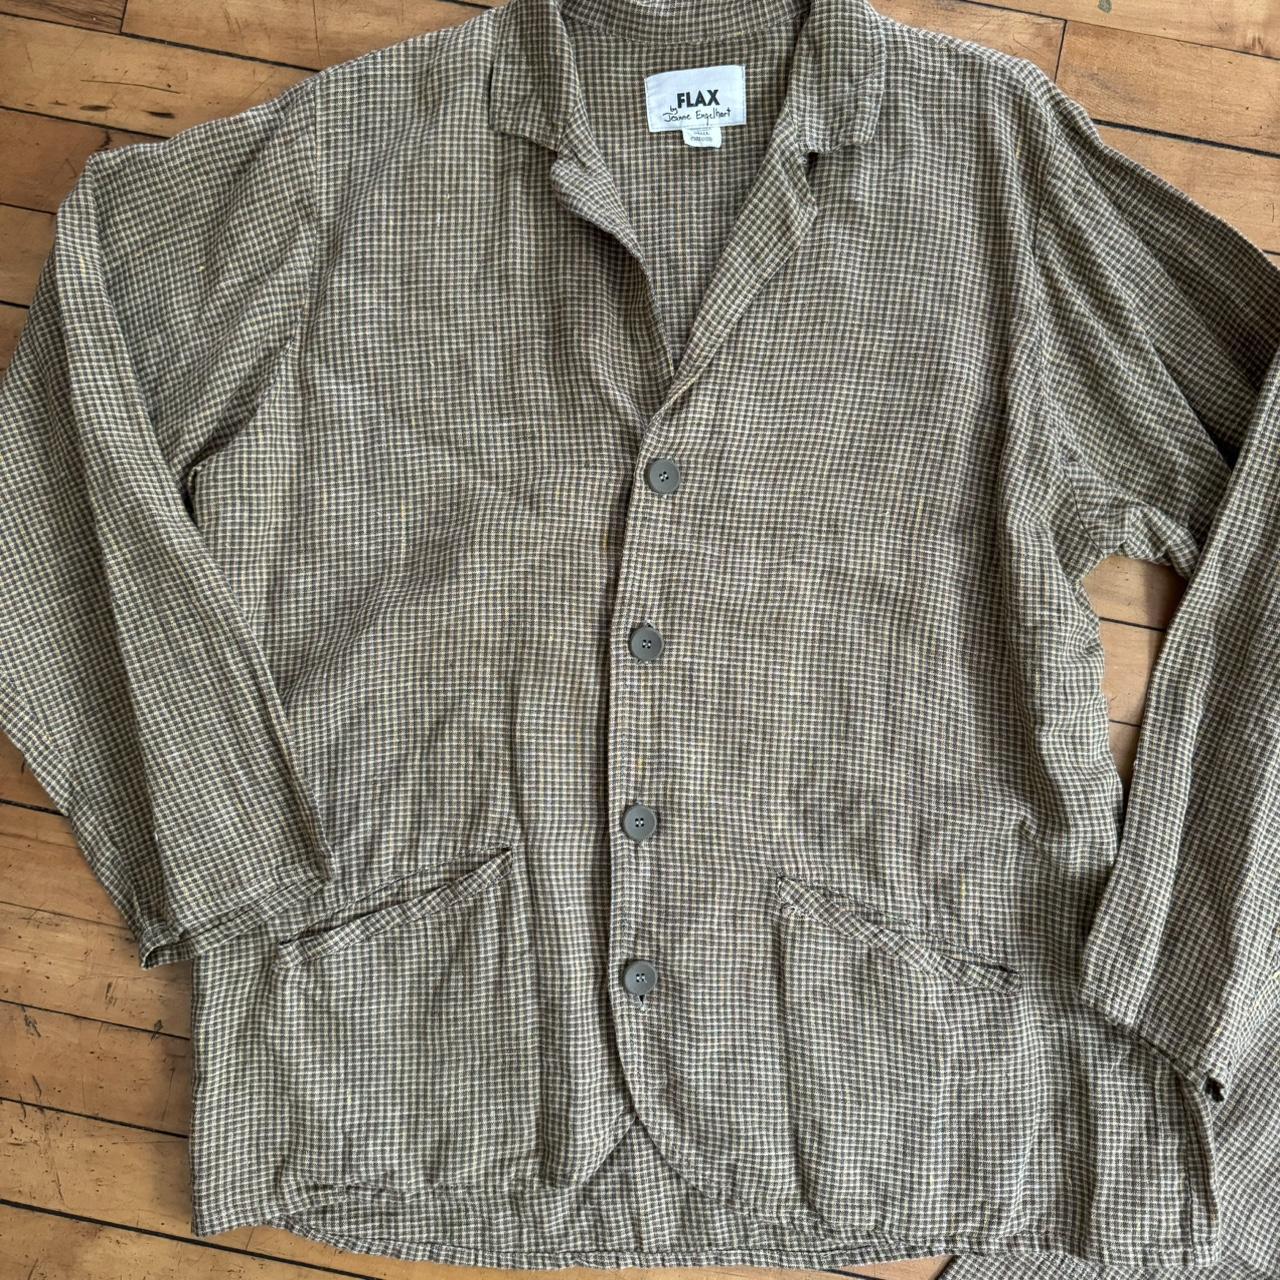 FLAX by Jeanne Engelhart Shirt Size Medium Brown Linen Top Button